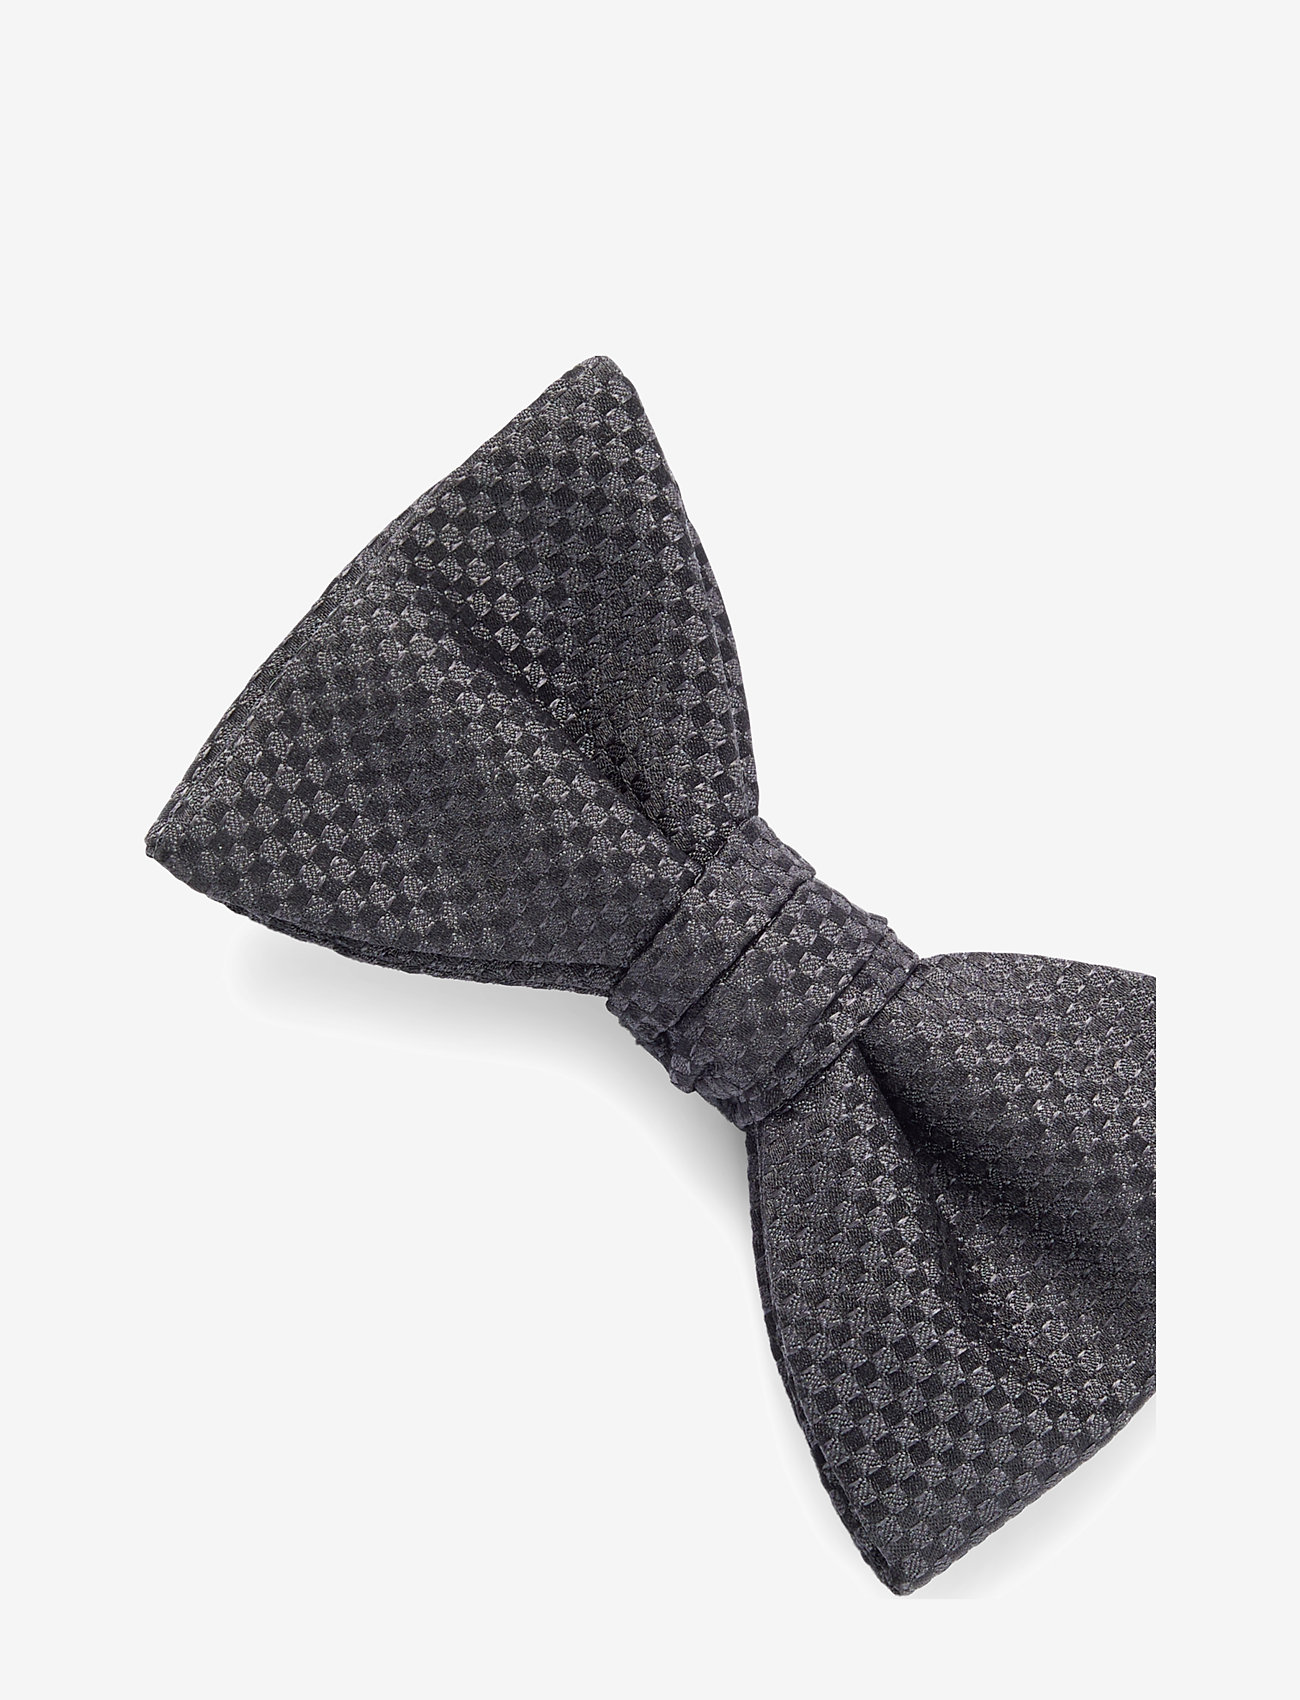 HUGO - Bow tie dressy - lowest prices - black - 1